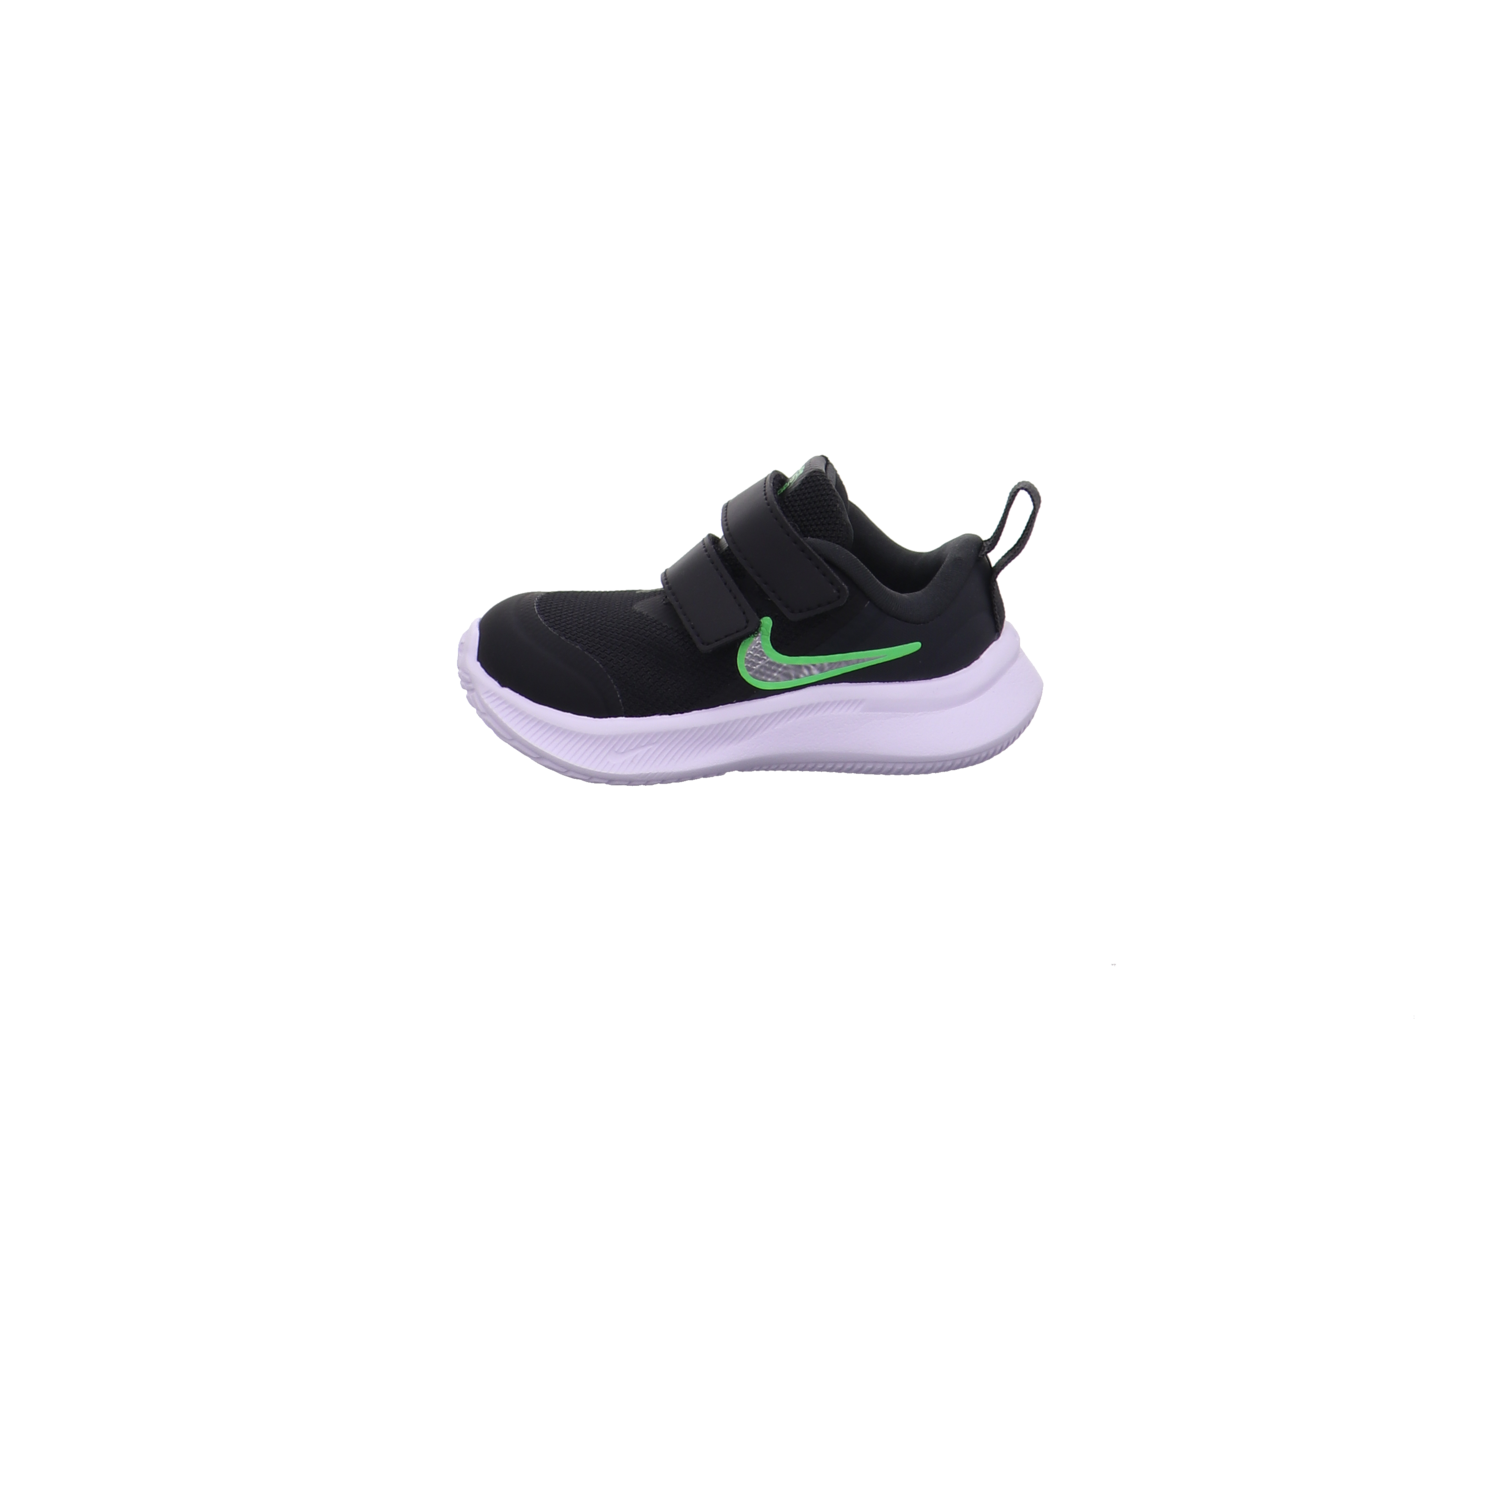 Nike Krabbel- und Lauflernschuhe schwarz kombi Bild1